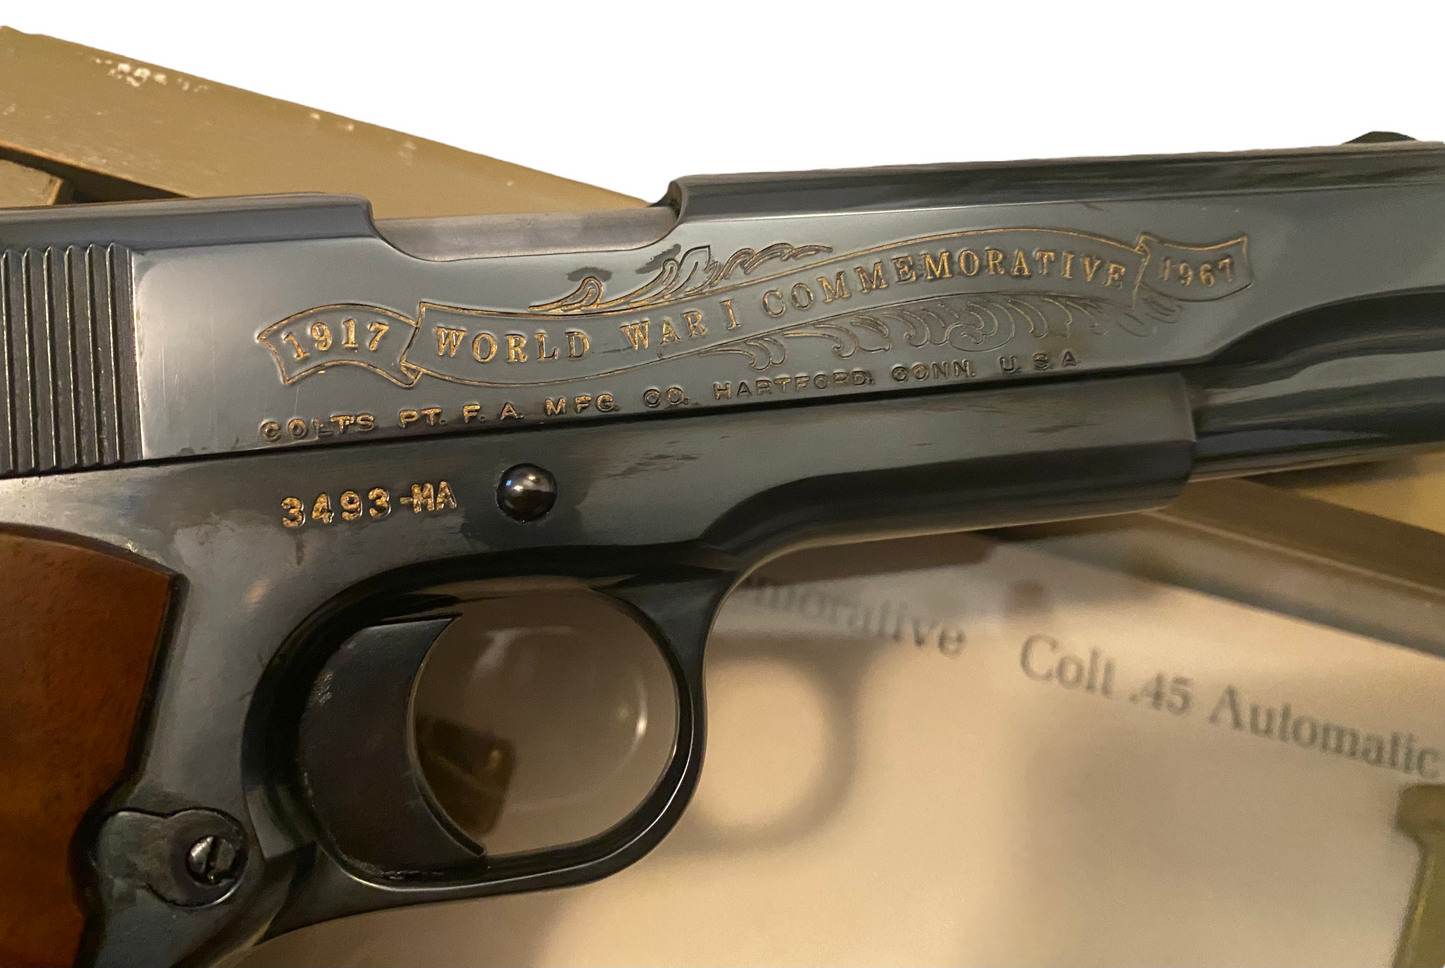 Cased Colt 1911 Meuse-Argonne Offensive Commemorative Pistol .45acp